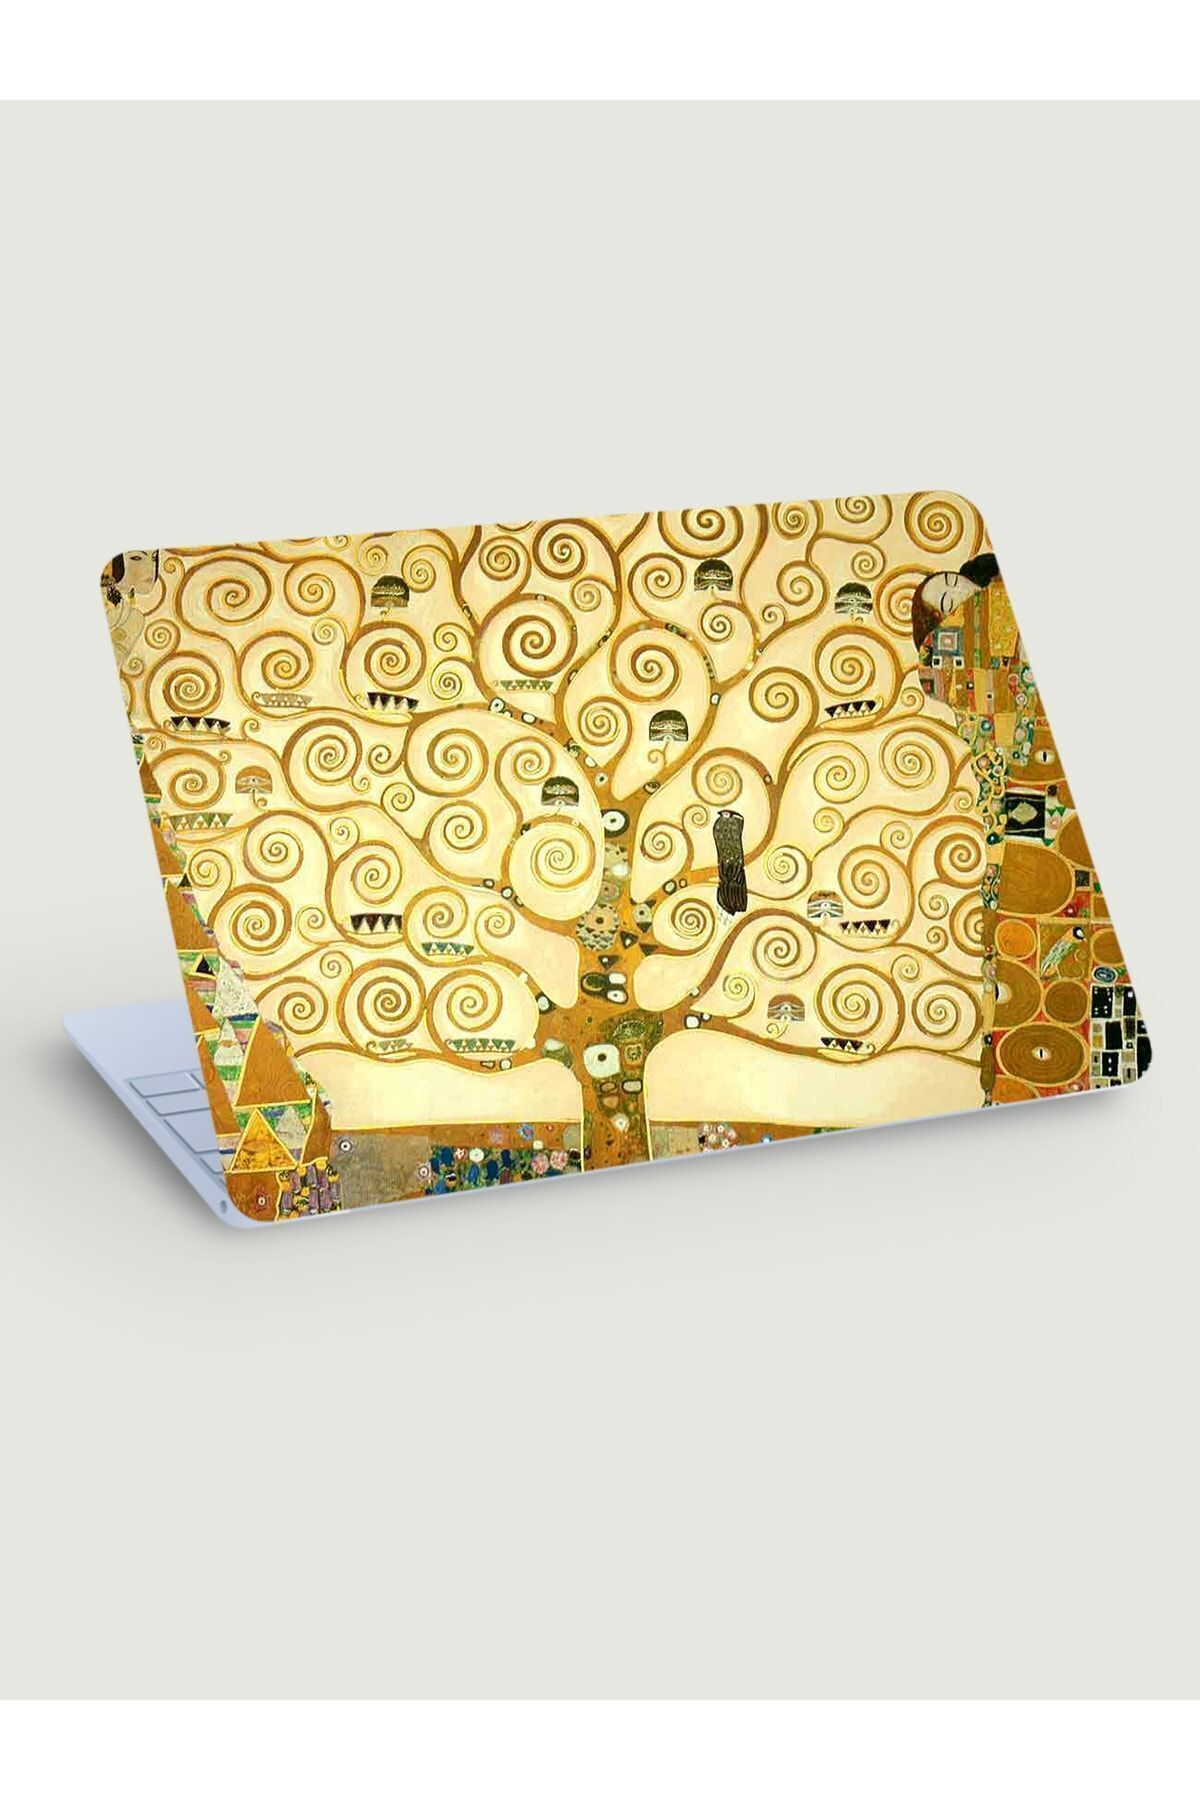 KT Decor Gustav Klimt Hayat Ağacı Laptop Sticker